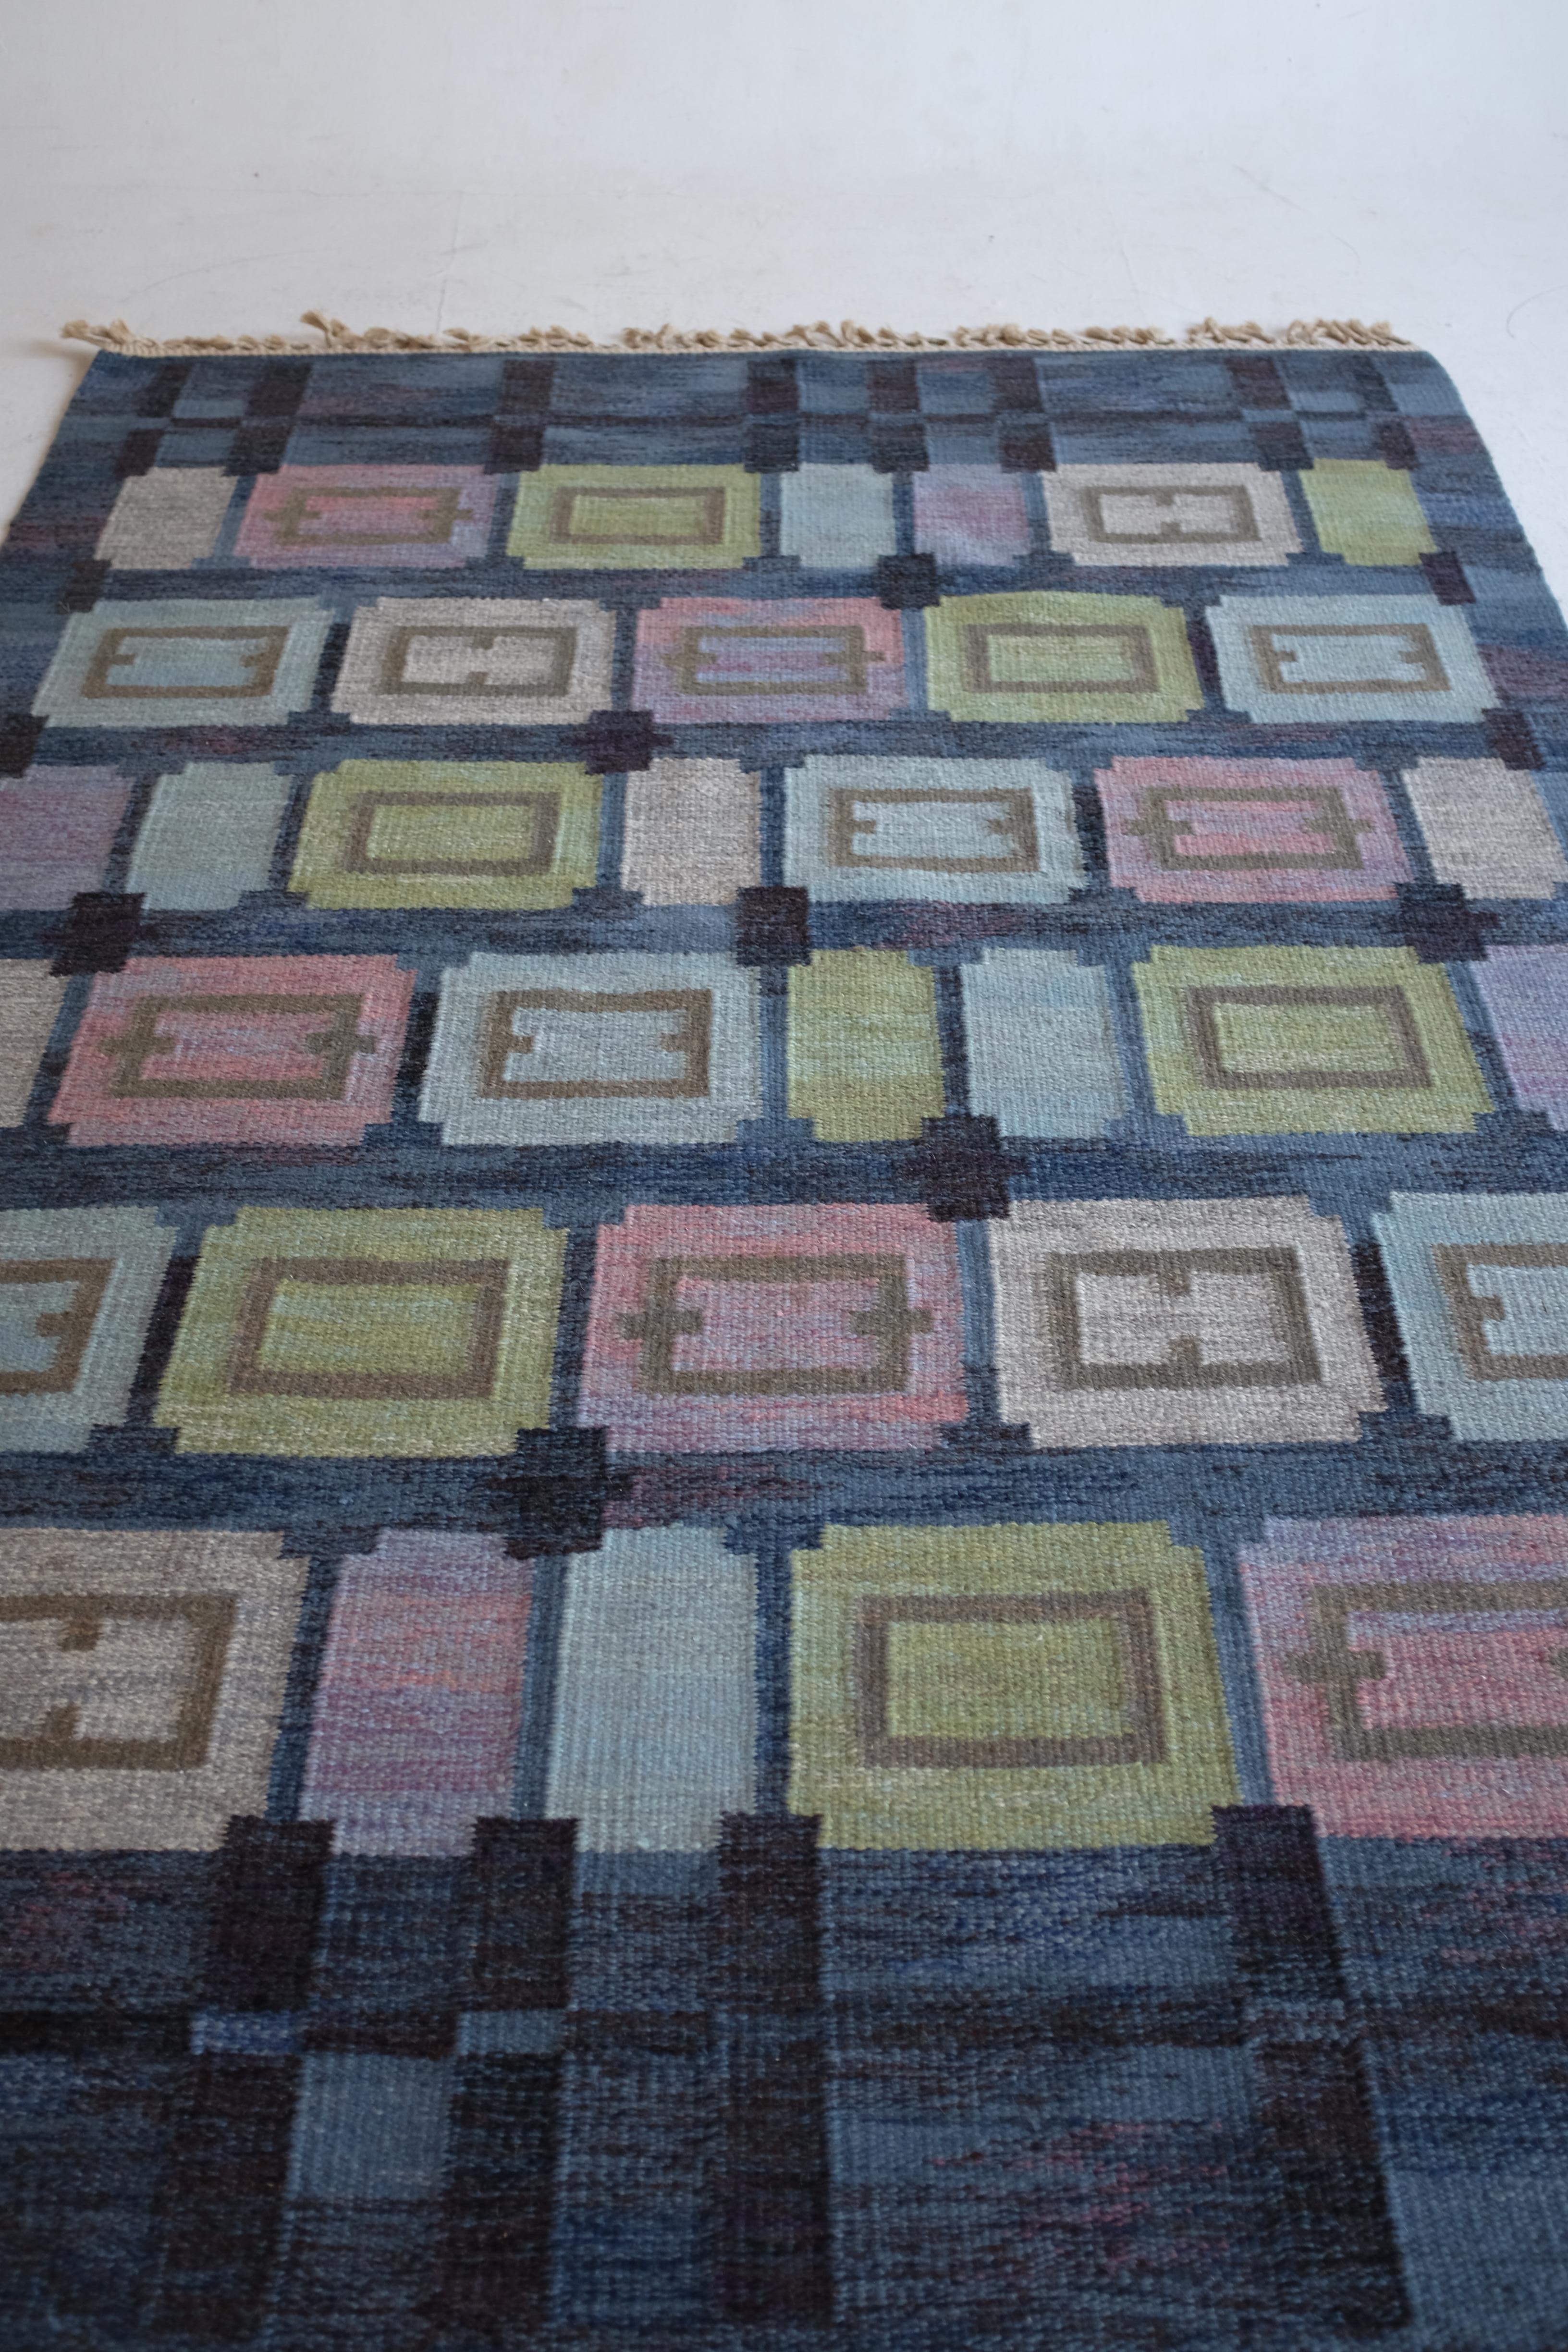 Atemberaubender schwedischer Mid-Century-Teppich namens Spise hall von Judith Johansson. Es wurde 1961 entworfen und zeigt einen blauen Hintergrund mit einem Kaleidoskop-Muster in Grün-, Rosa- und Lila-Tönen. Judith Johansson war eine schwedische